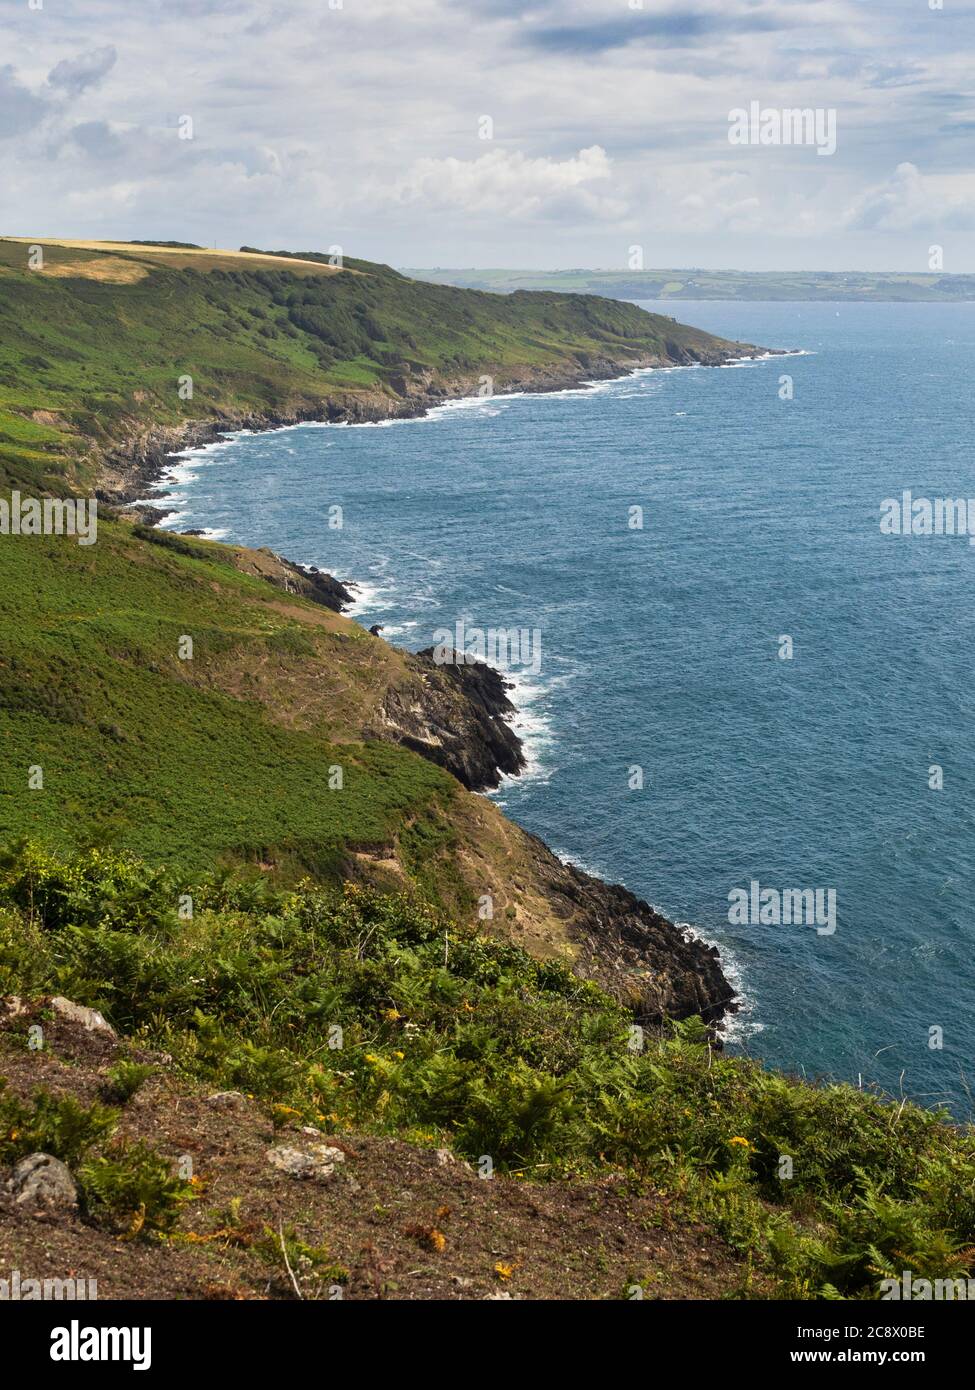 La Rame Head Heritage Coast, un'area di straordinaria bellezza naturale nel sud-est della Cornovaglia, Regno Unito Foto Stock